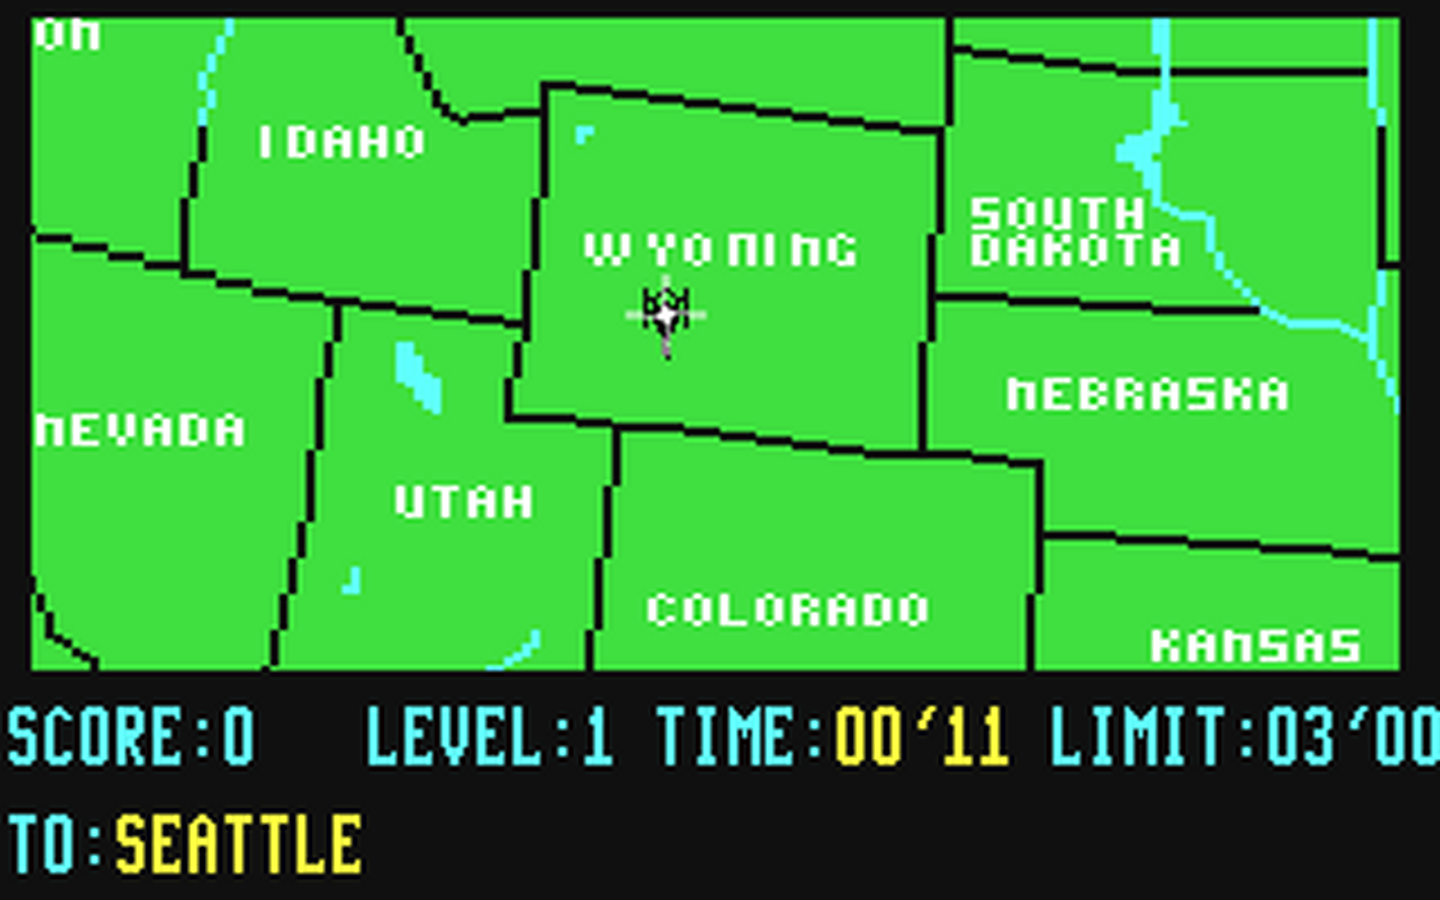 C64 GameBase Maps_64_-_USA RadarSoft 1985